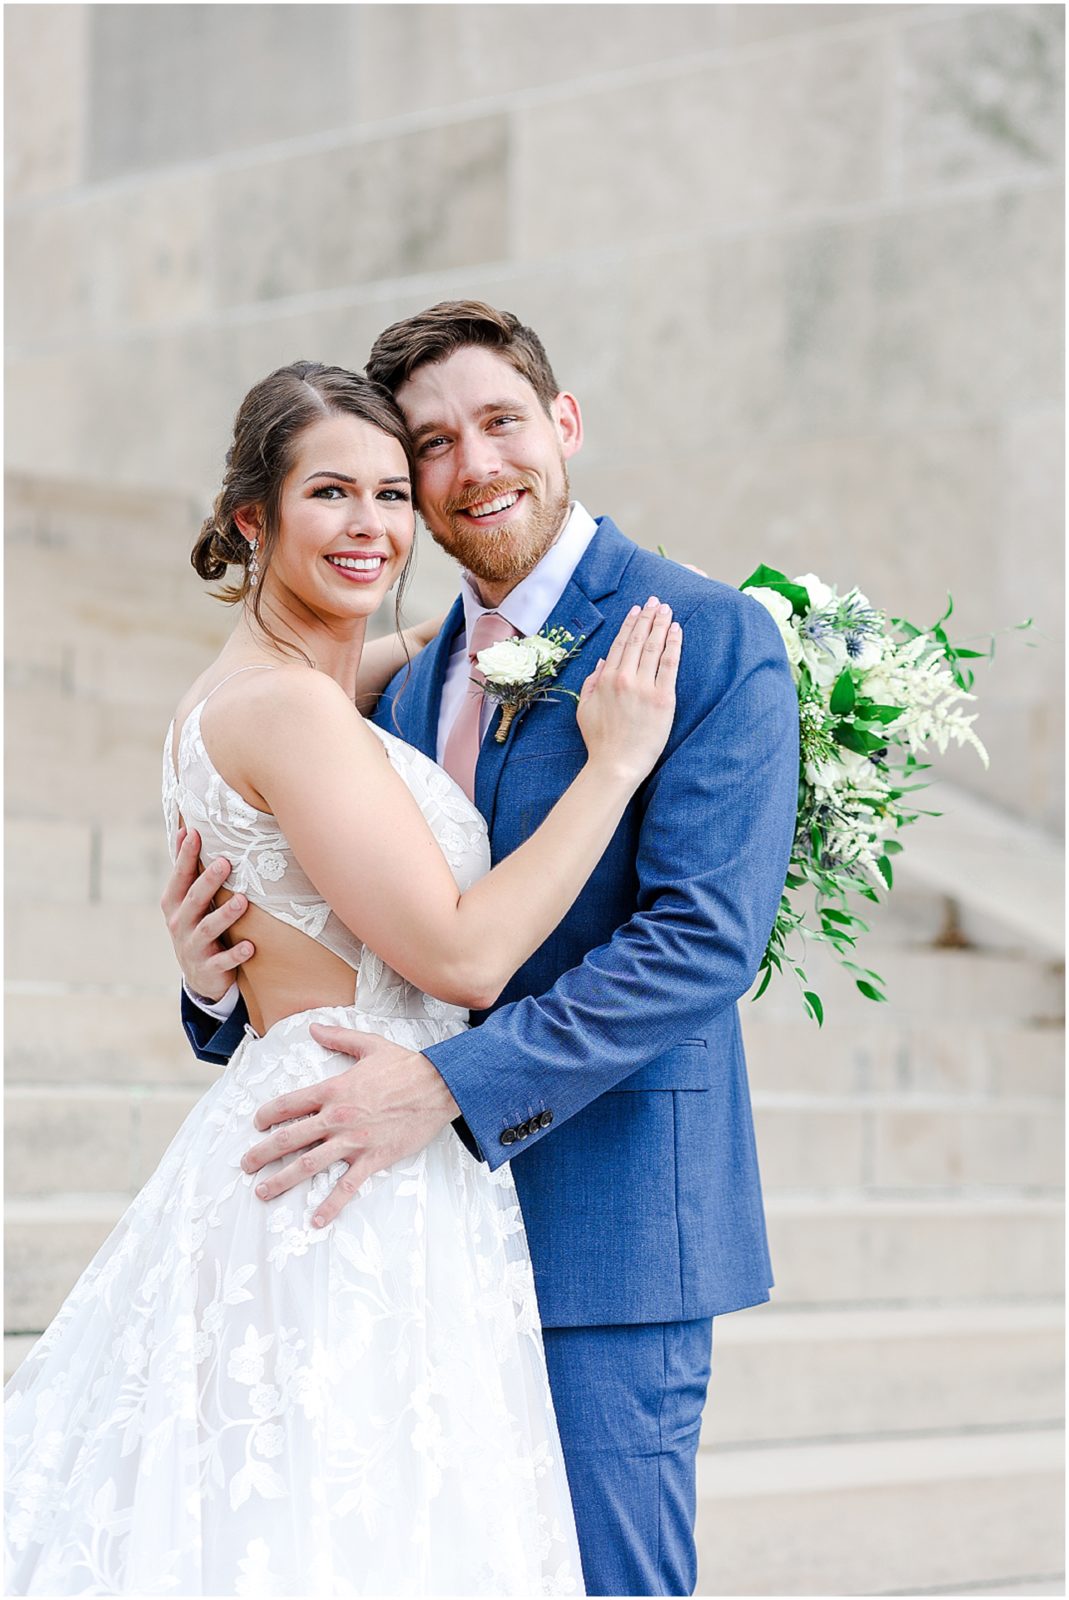 beautiful bride and groom - Kansas City and Missouri Wedding Photographer - KC Liberty Memorial Wedding Photos - Bride & Groom Portraits - Wedding Photos 